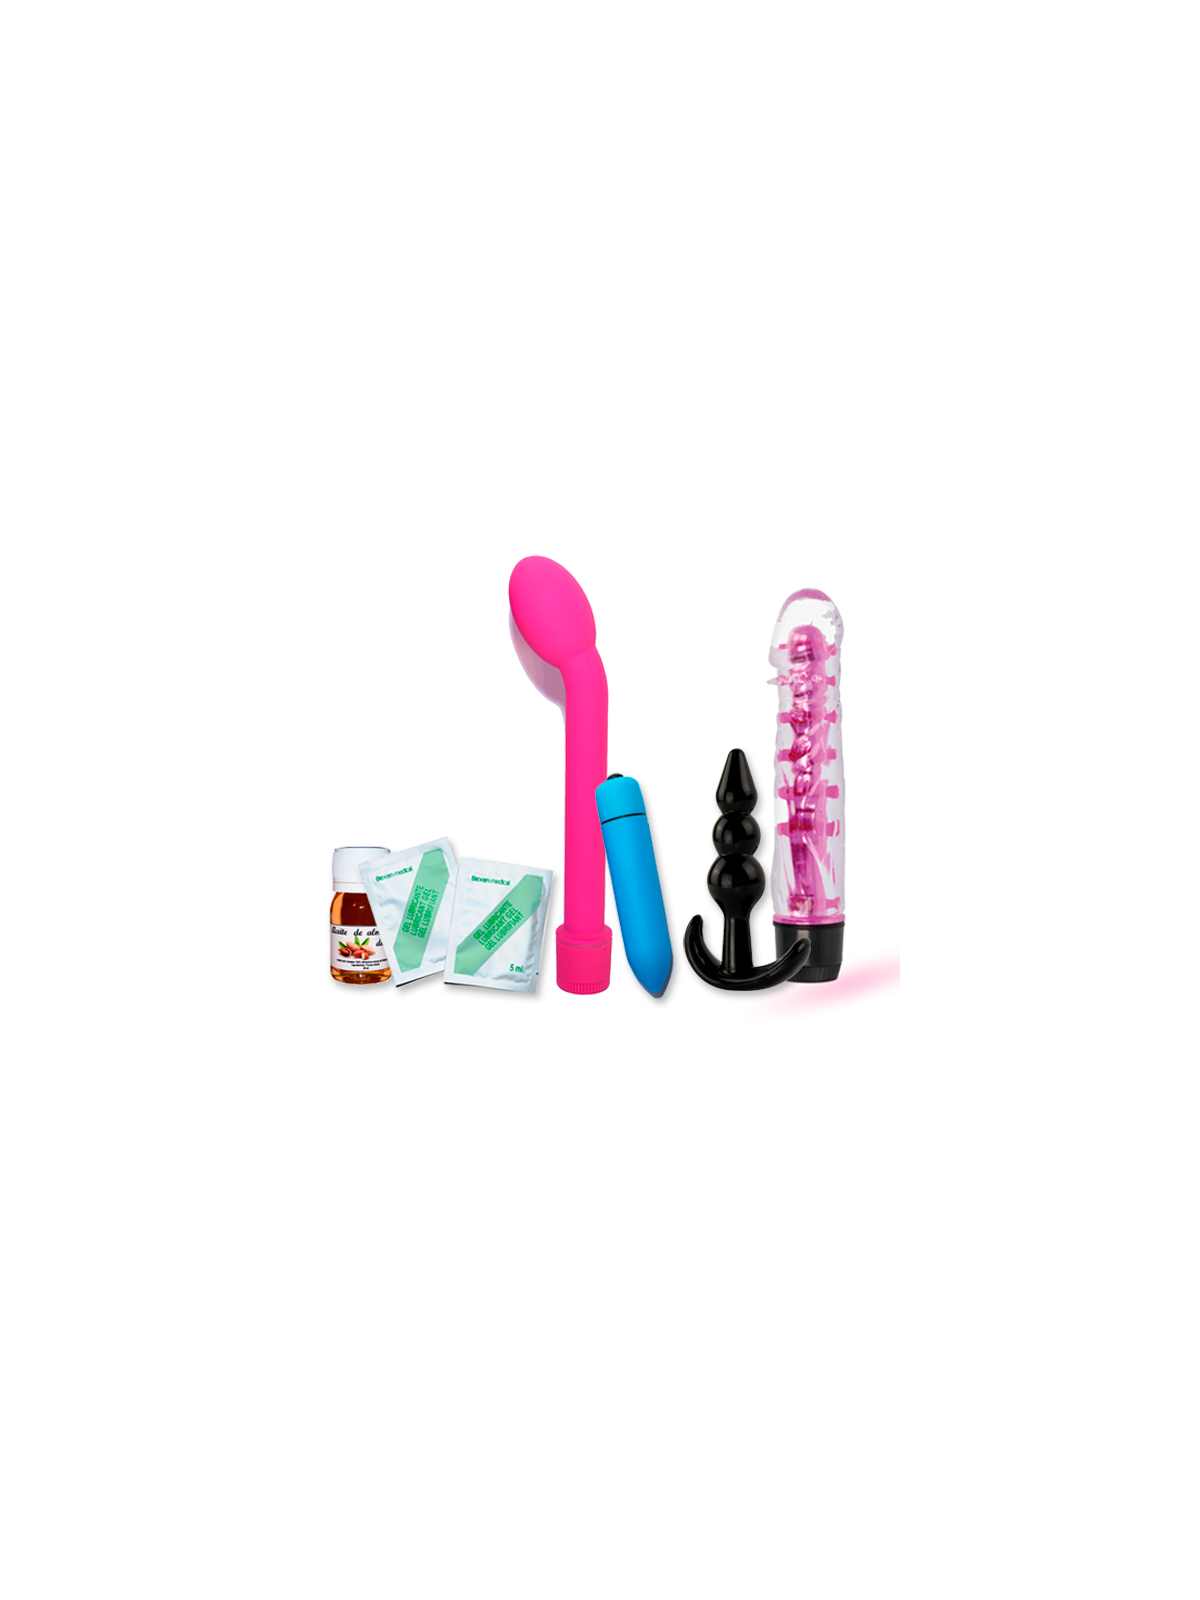 Pack Erótico Rose - Comprar Kit erótico pareja Sexto Placer Collection - Packs eróticos (1)